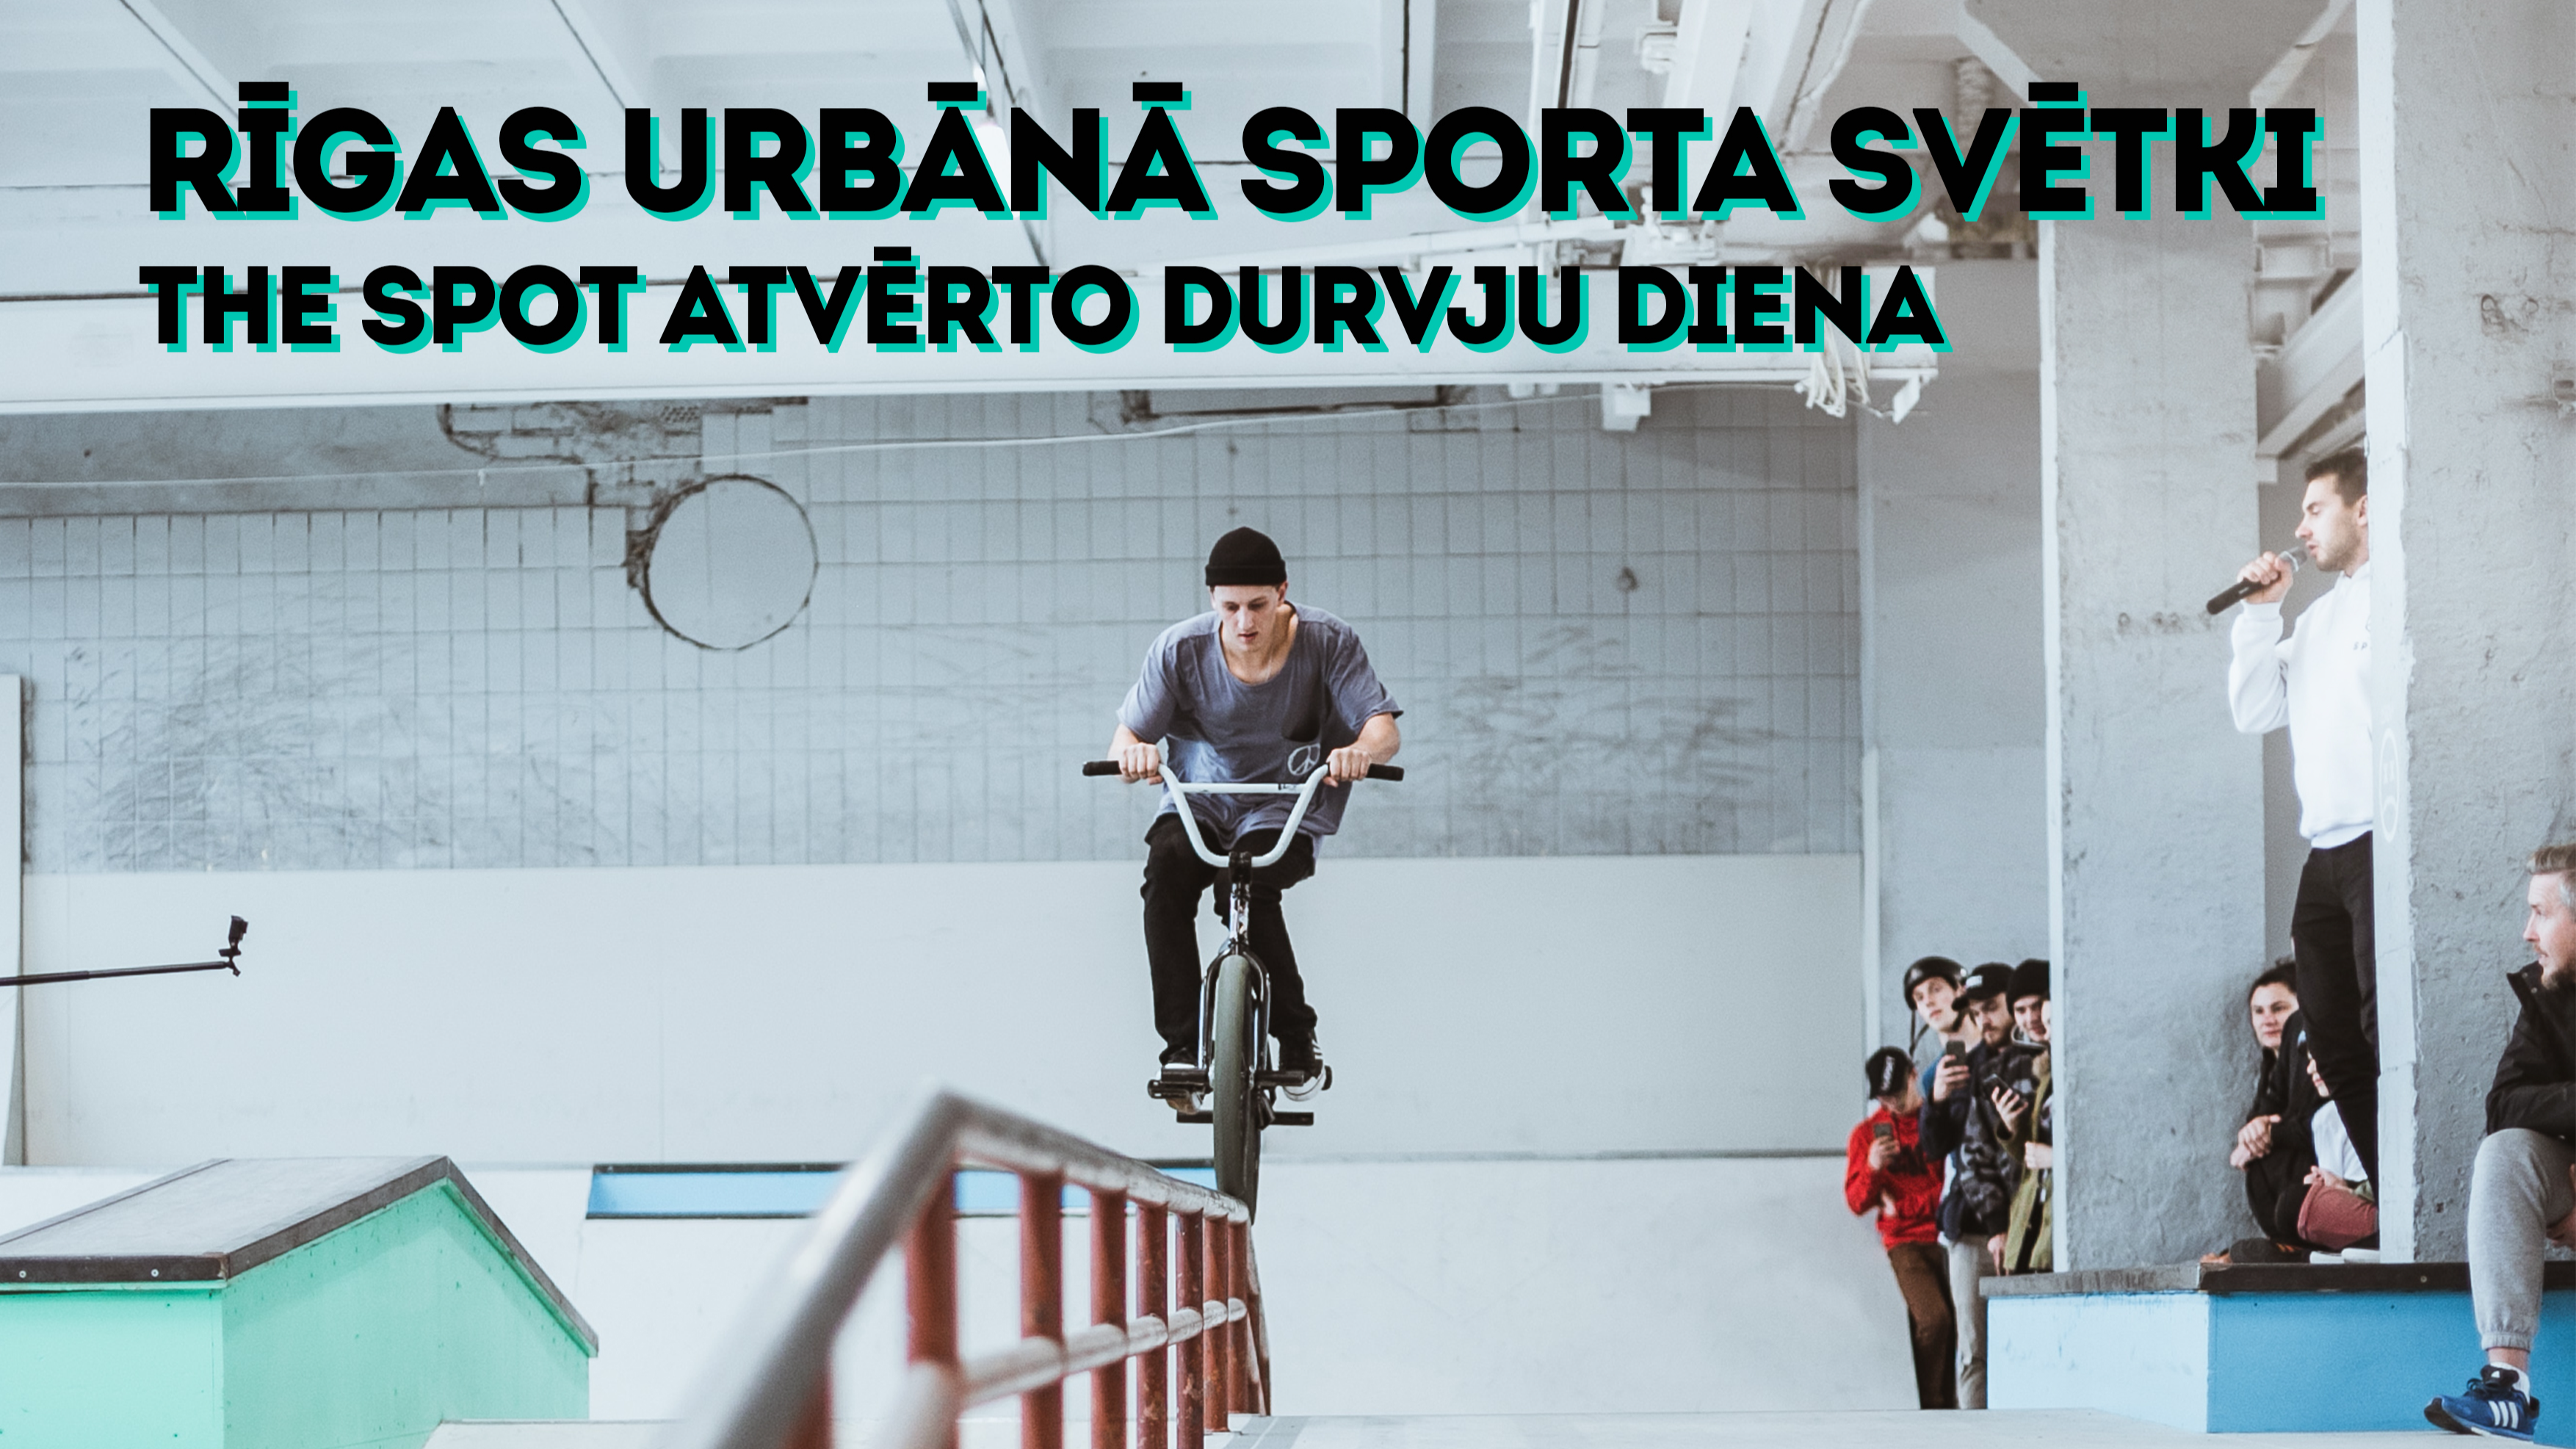 Rīgas urbānā sporta svētkus aicina svinēt Baltijas modernākajā alternatīvo sporta veidu centrā THE SPOT